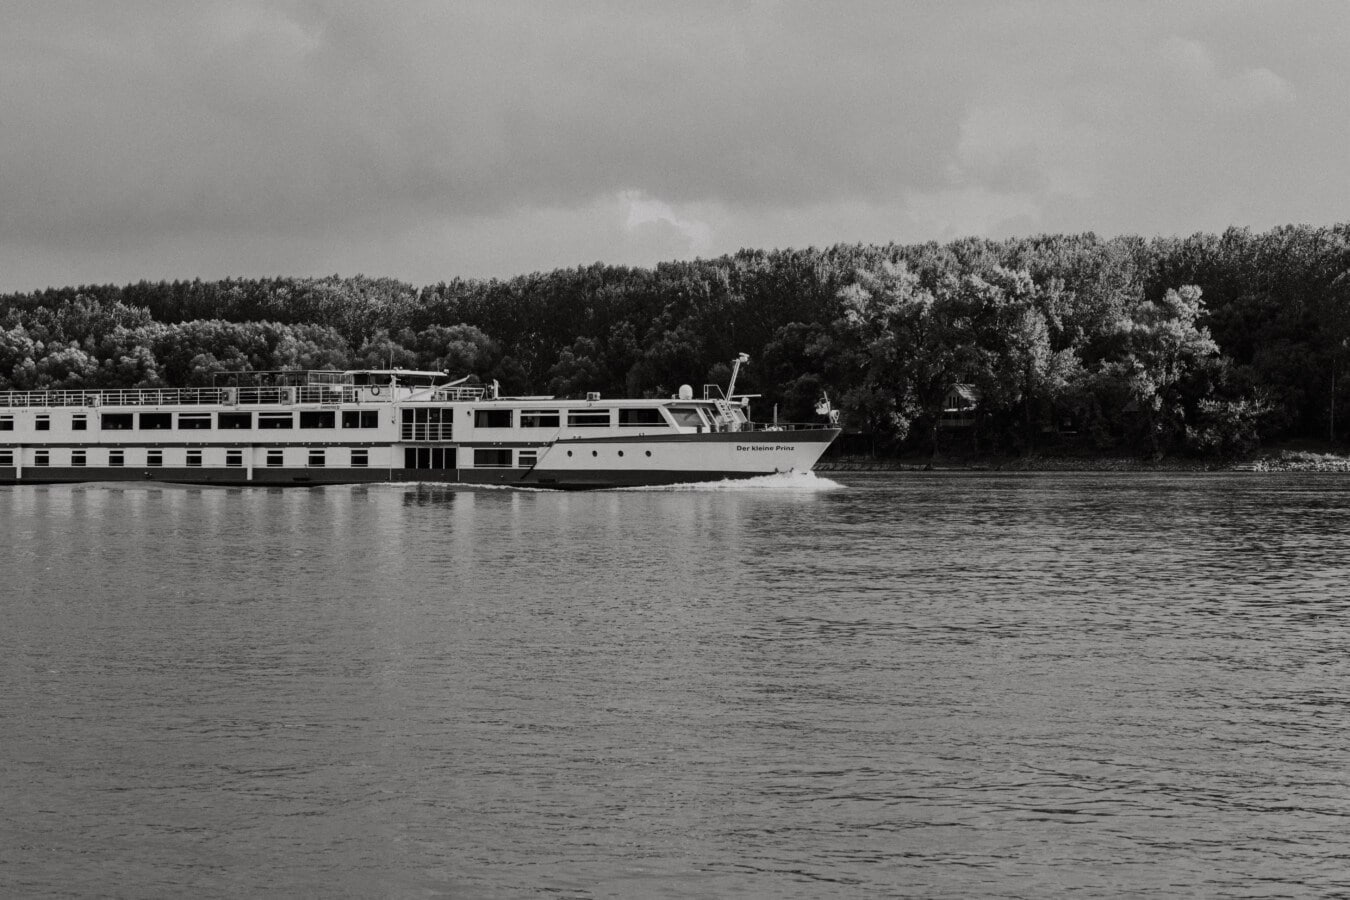 navio de cruzeiro, preto e branco, preto e branco, nave, atração turística, viagens, Rio, veículo, água, Costa